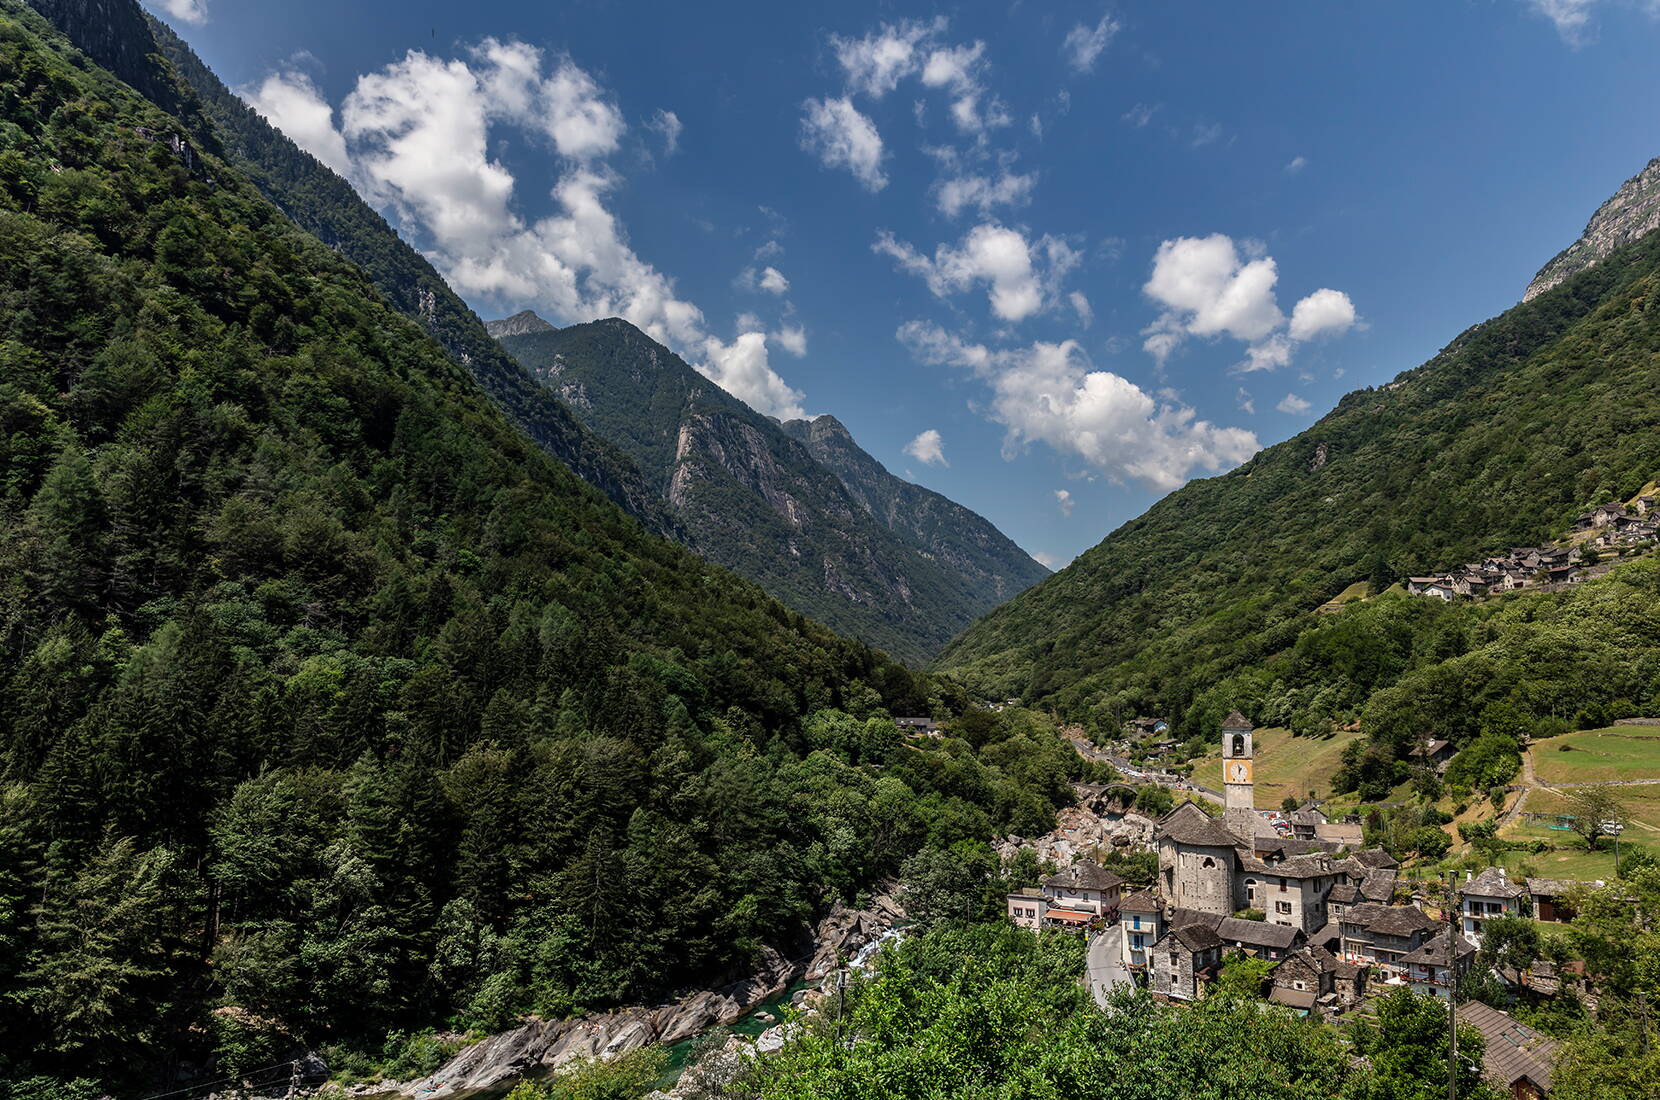 Familienausflug Sentierone Verzasca. Eine der schönsten Wanderungen im Tessin, entlang der Verzasca durch das ganze Tal bis nach Sonogno verläuft.